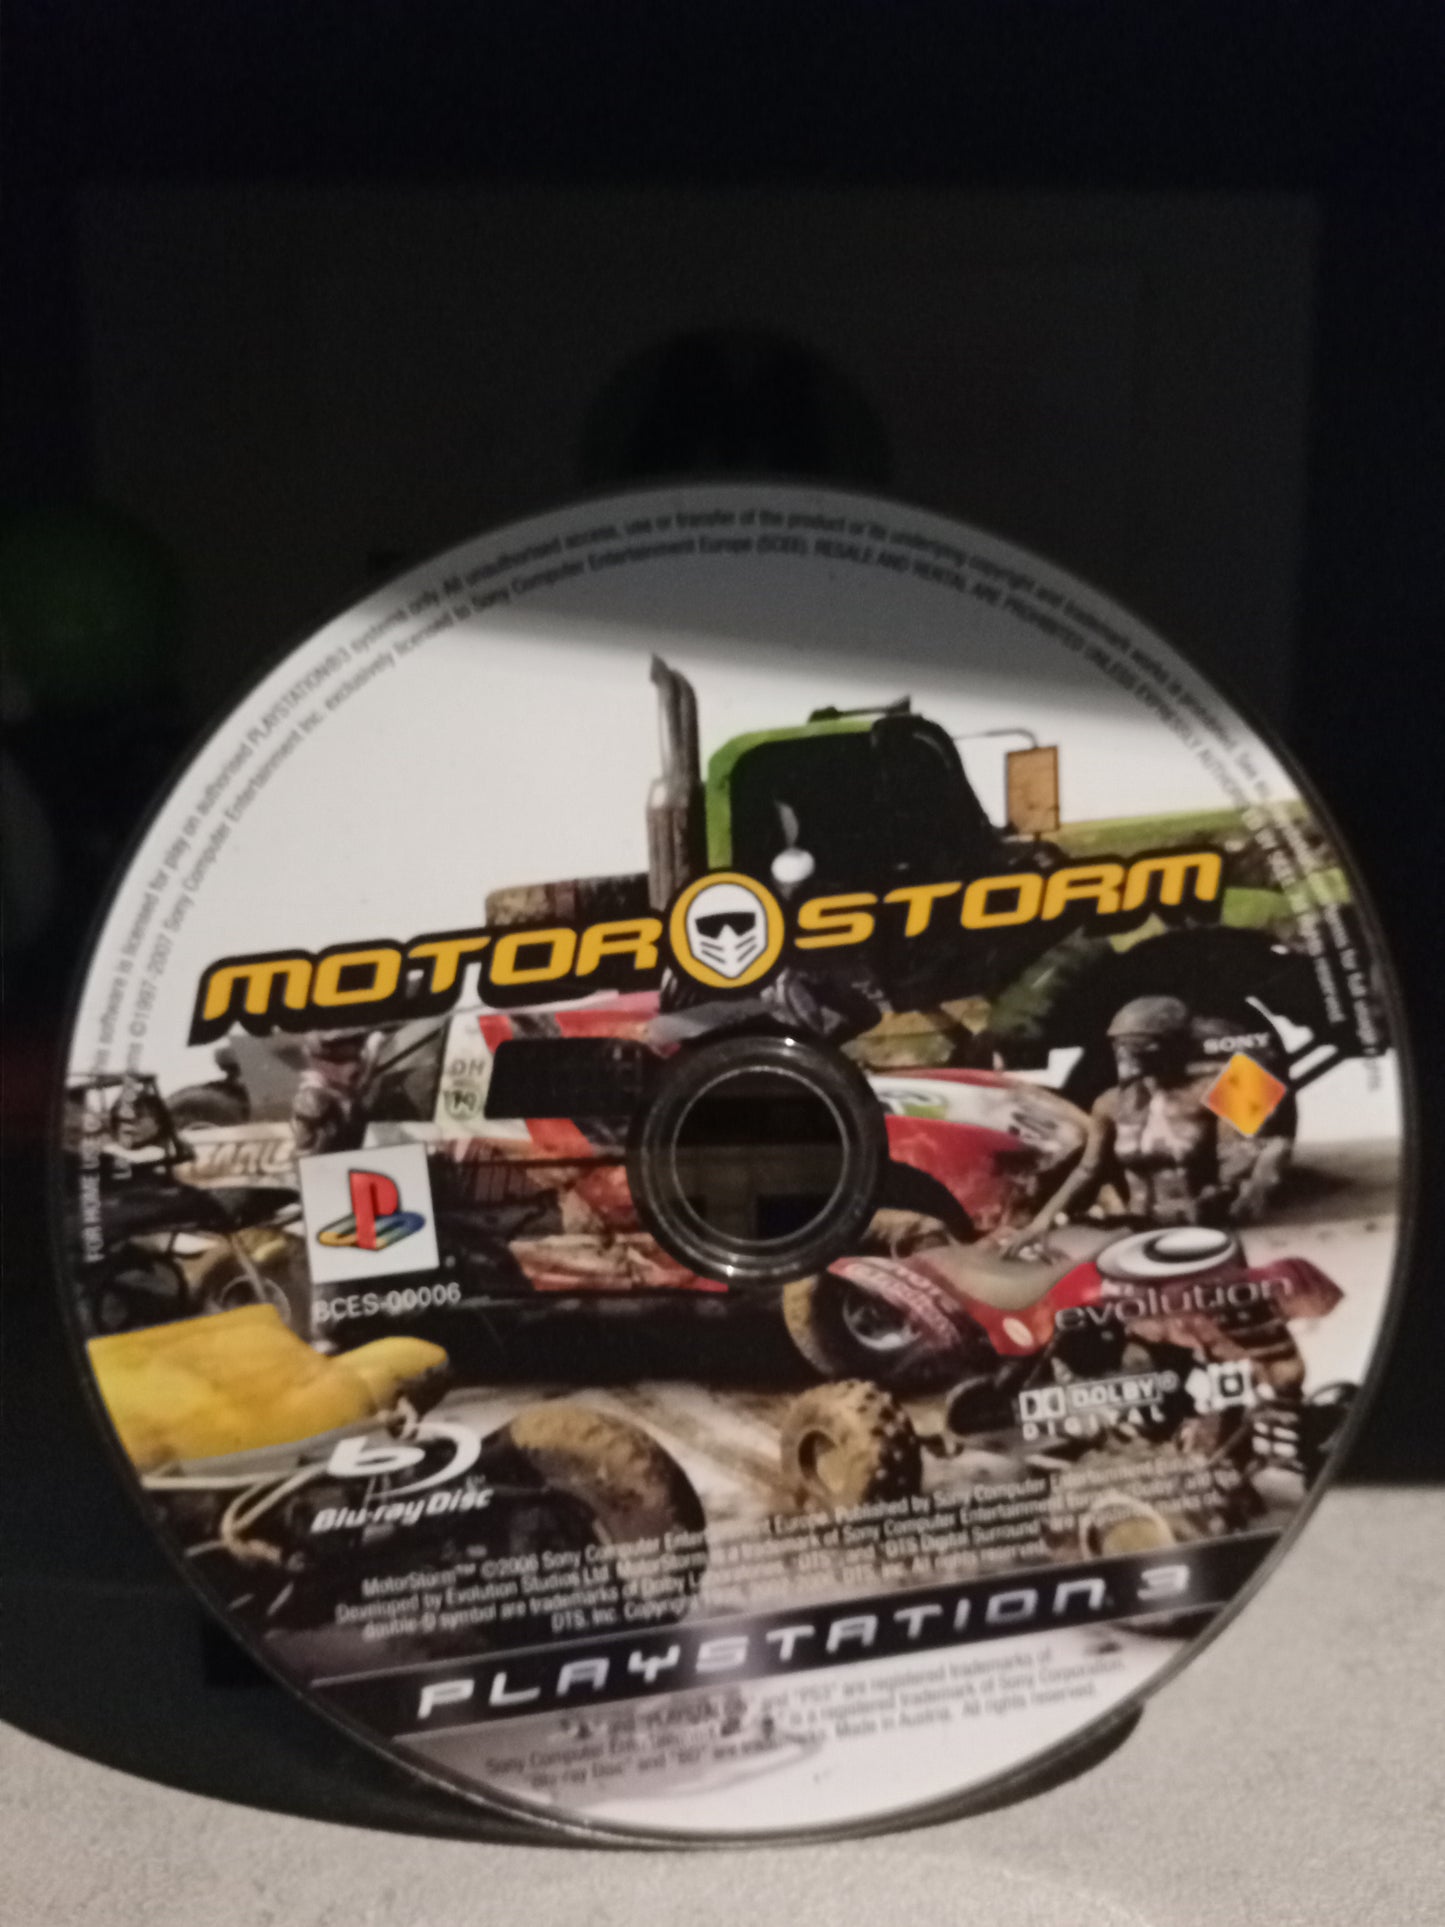 Motorstorm (solo CD) + Motorstorm Pacific Rift